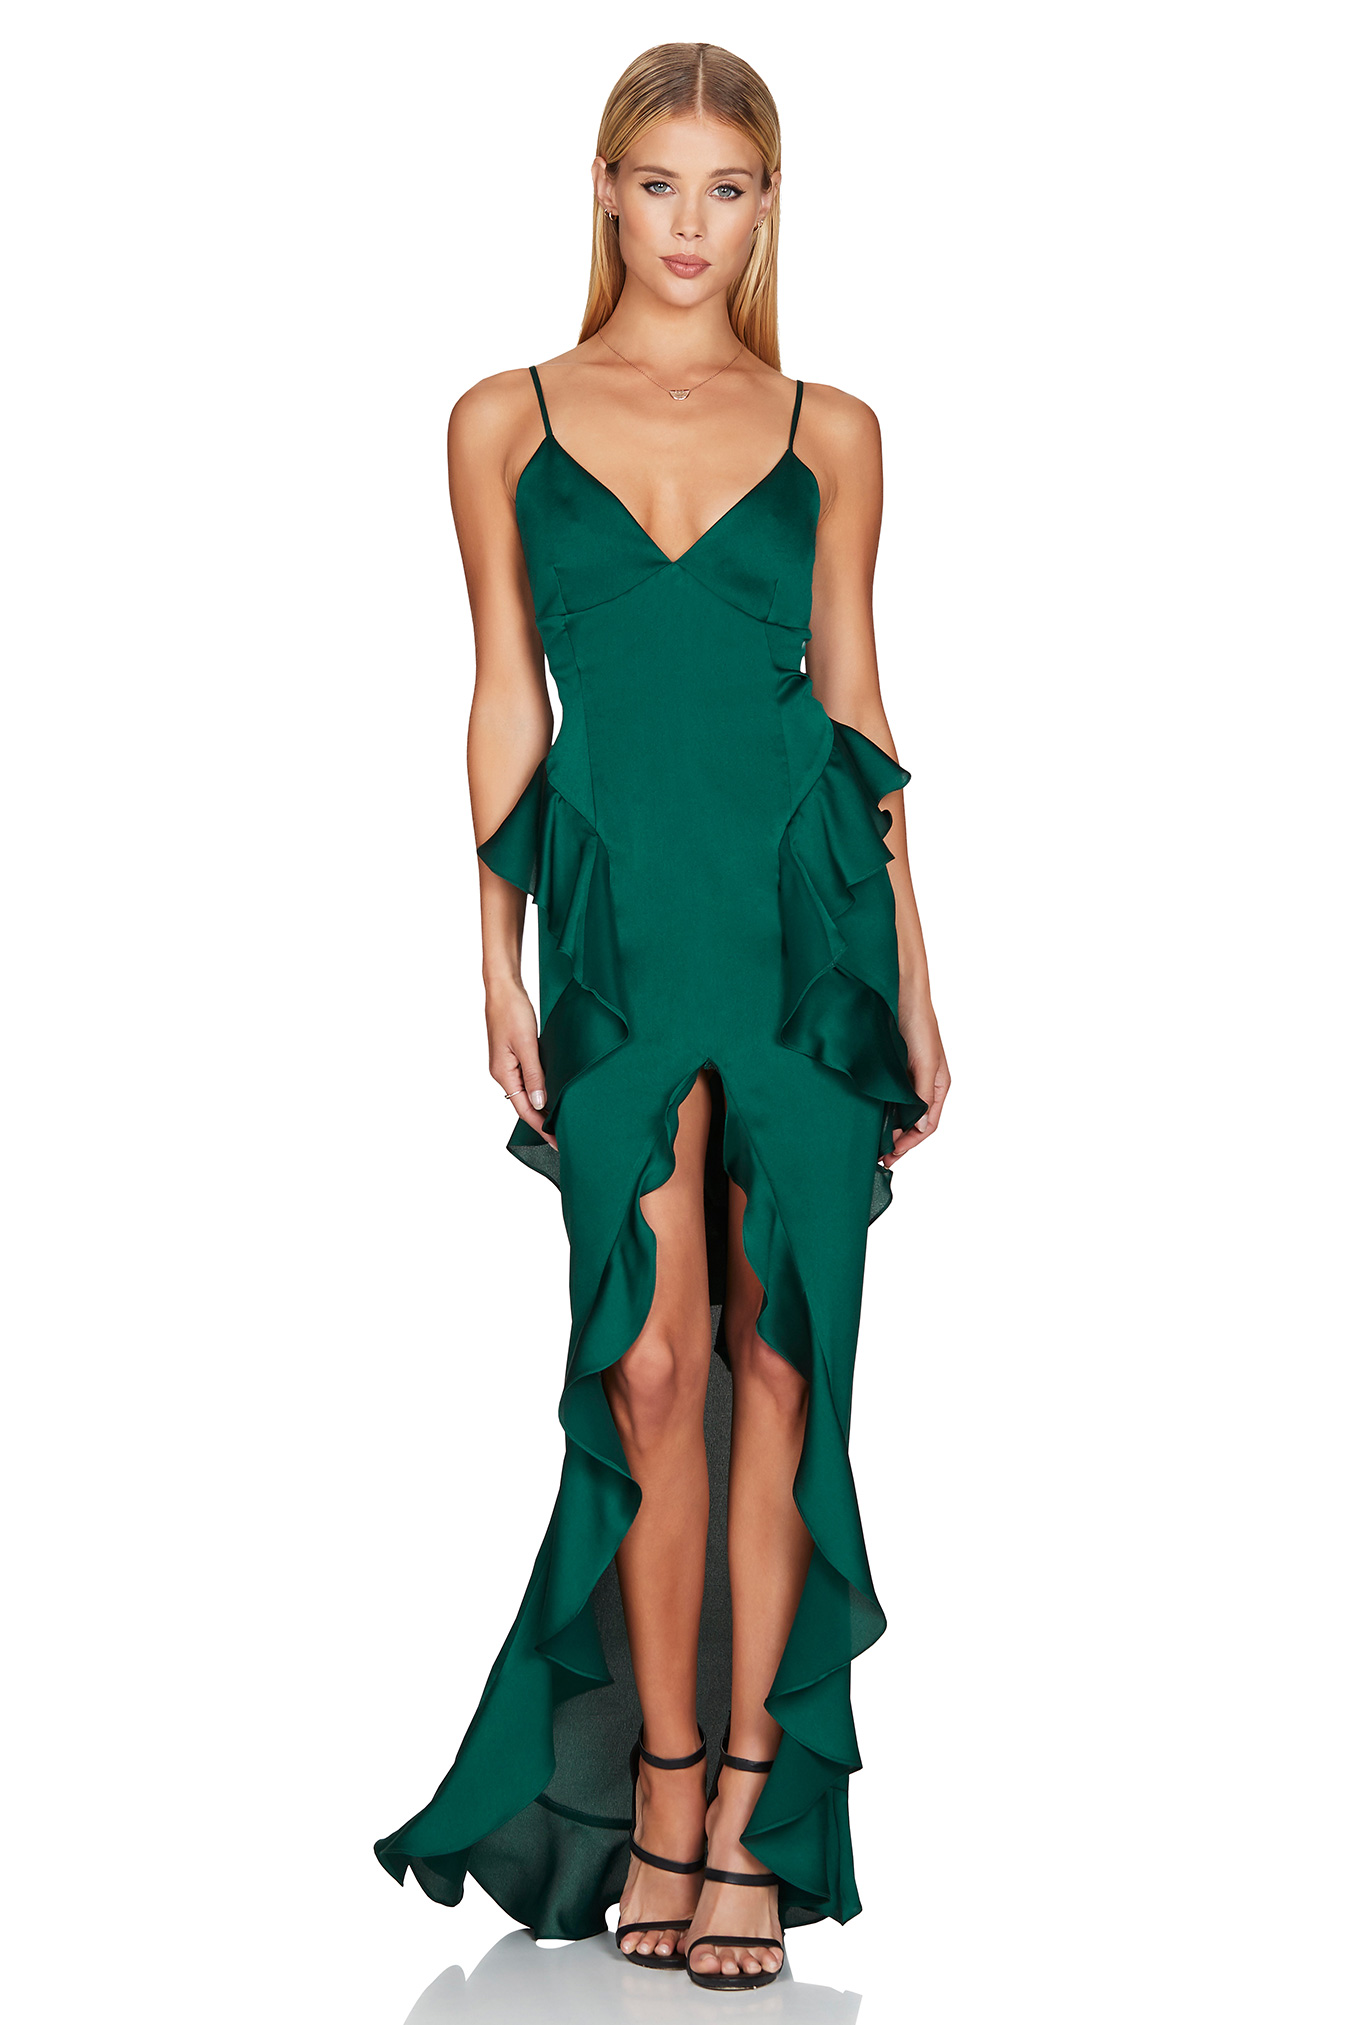 ASHTON GOWN : Buy Designer Dresses ...